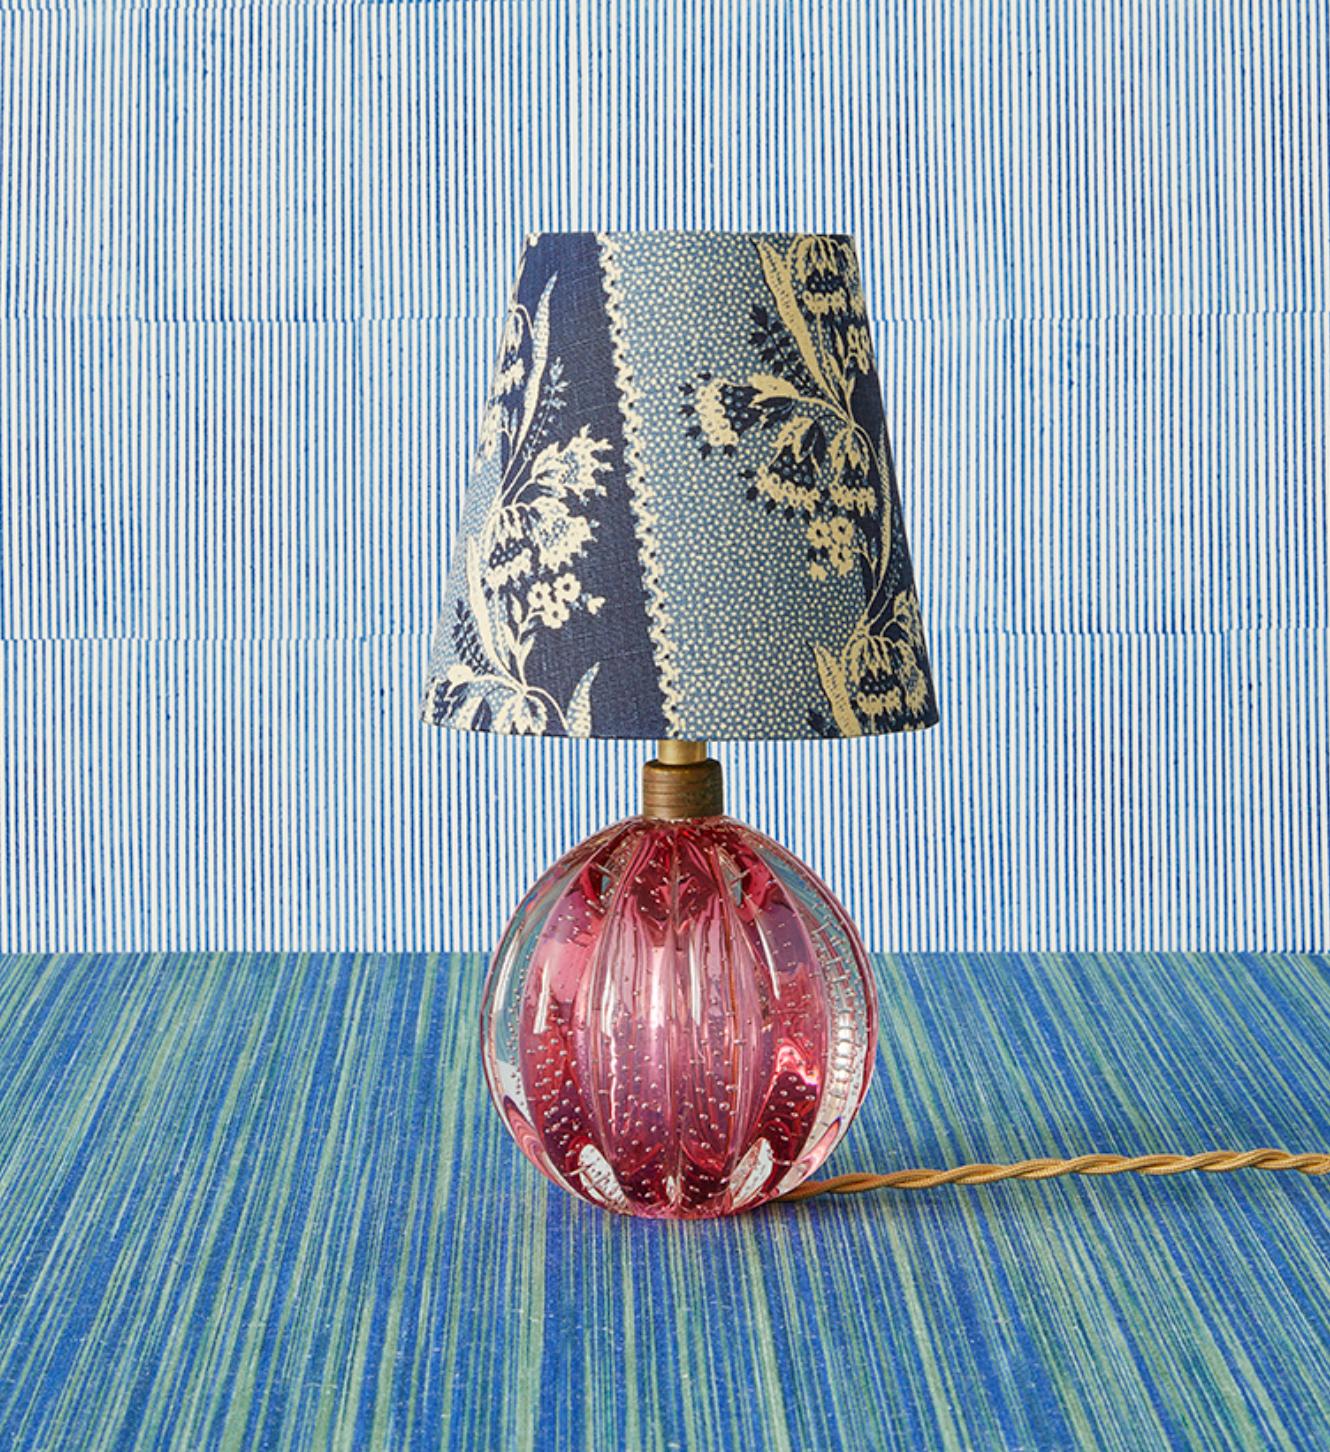 Italien, 1950er Jahre

Murano Tischlampen aus rosa Glas mit individuellem Schirm von The Apartment.

H 29 x Ø 16 cm